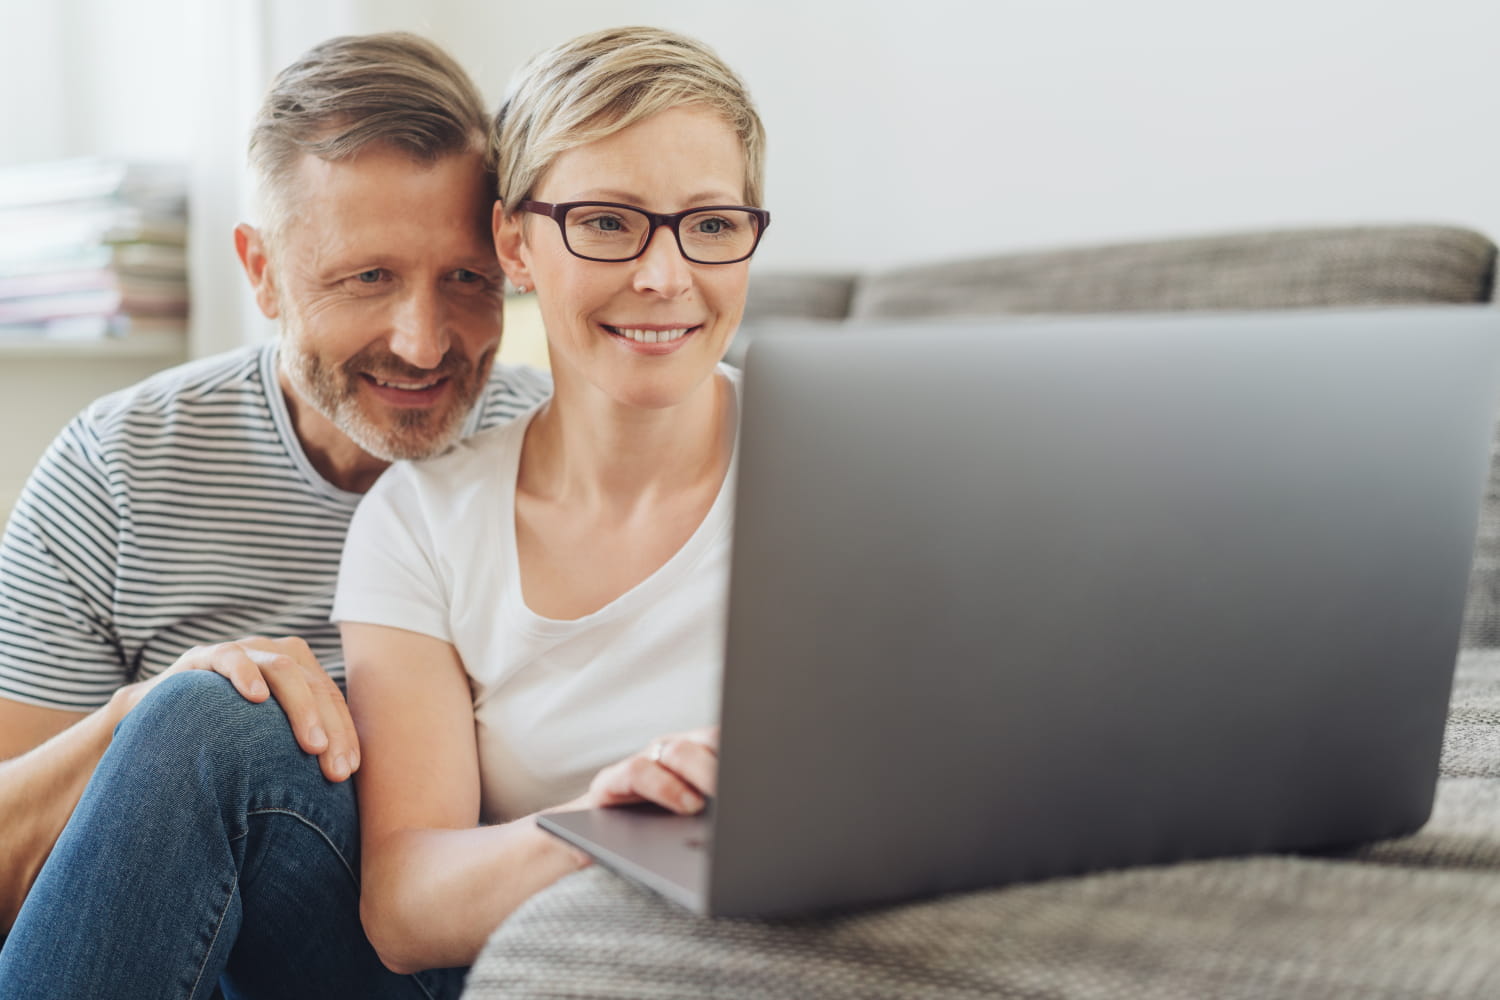 Mand og kvinde ser smilende på computer skærm